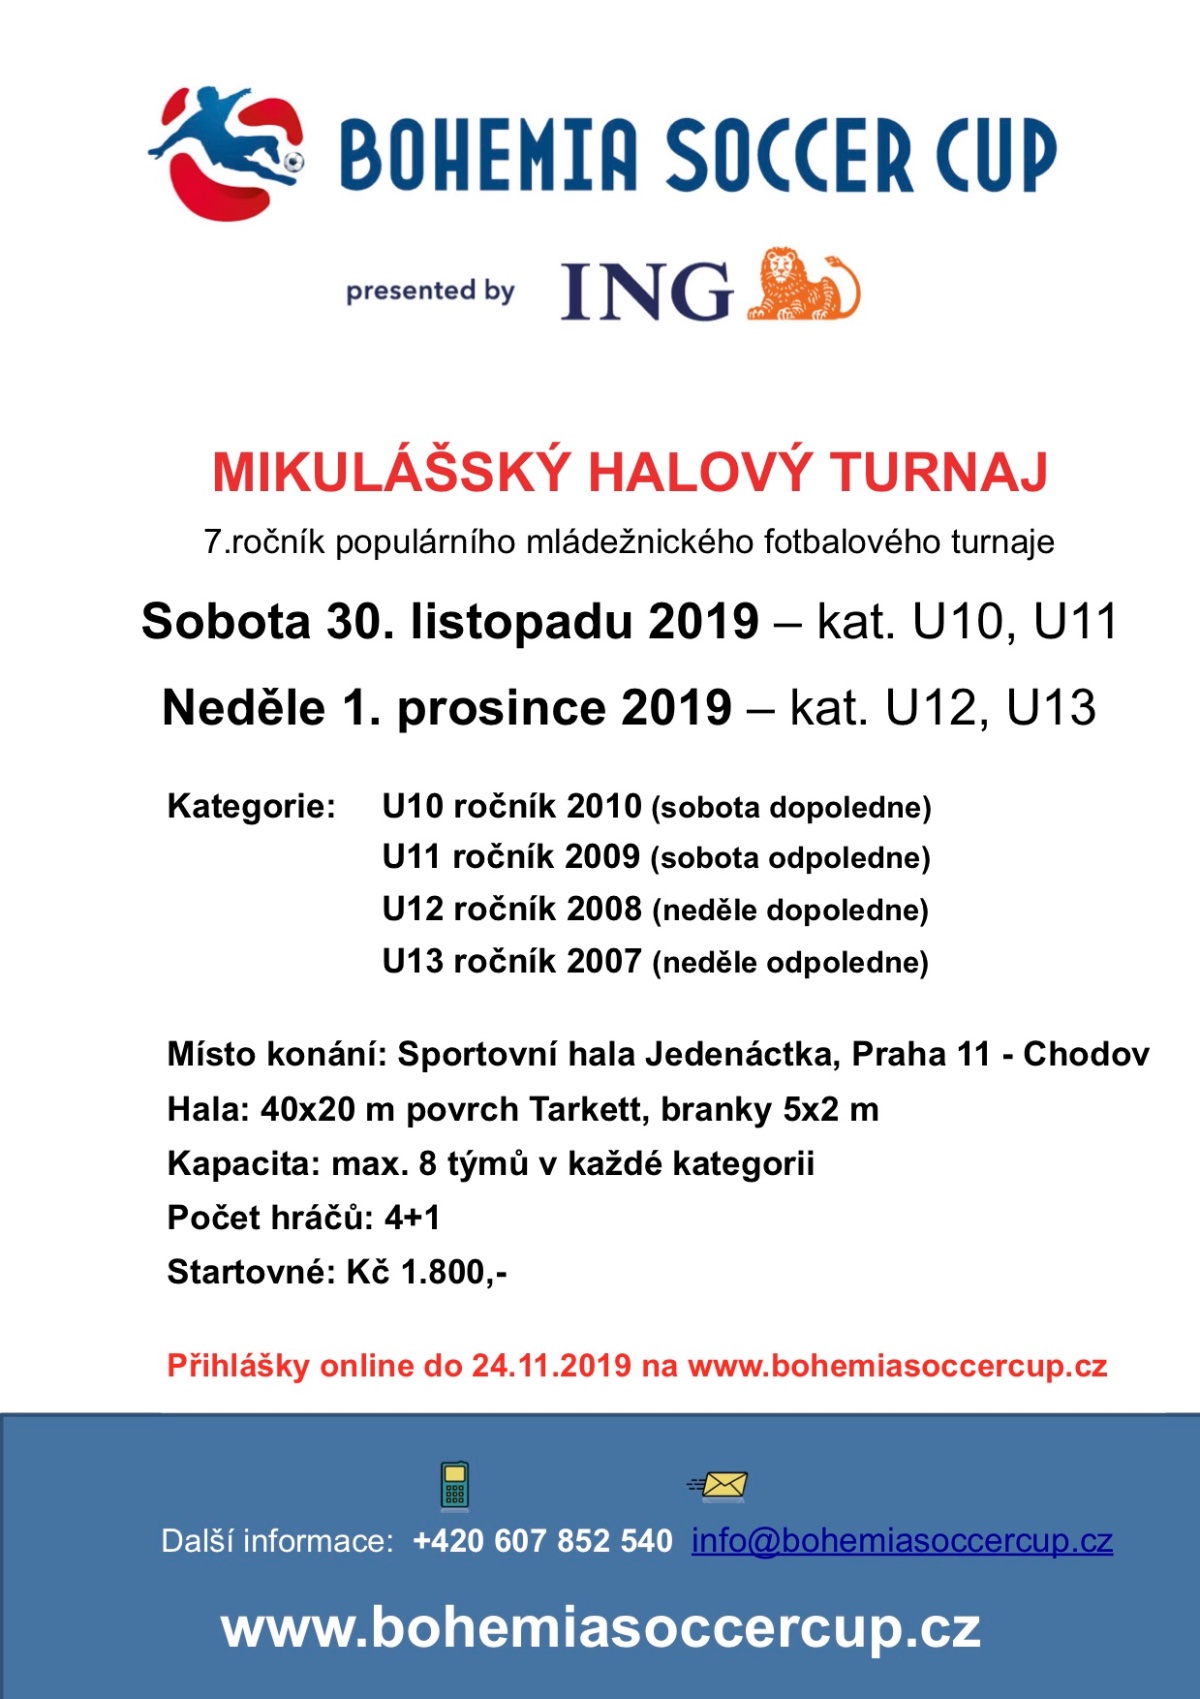 Mikulášský halový turnaj ING Bohemia Soccer Cup 2019